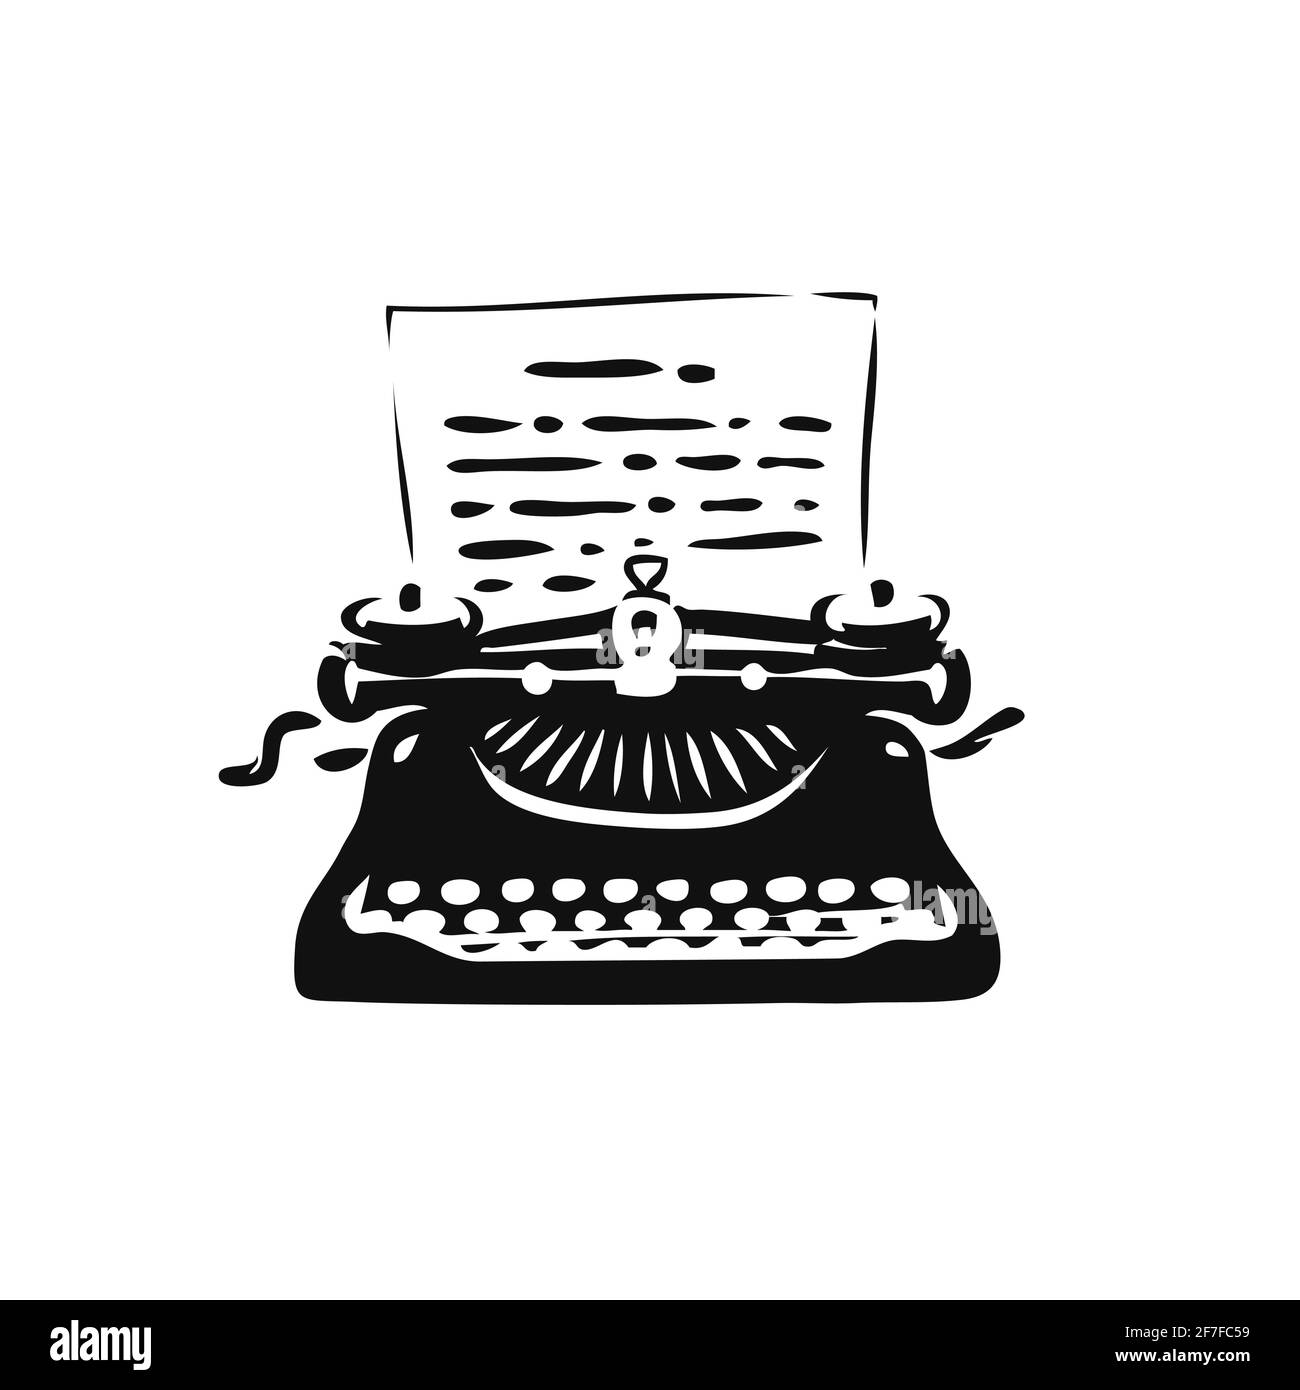 Simbolo o logo di una vecchia macchina da scrivere d'epoca. Letteratura, giornalismo icona illustrazione vettoriale Illustrazione Vettoriale